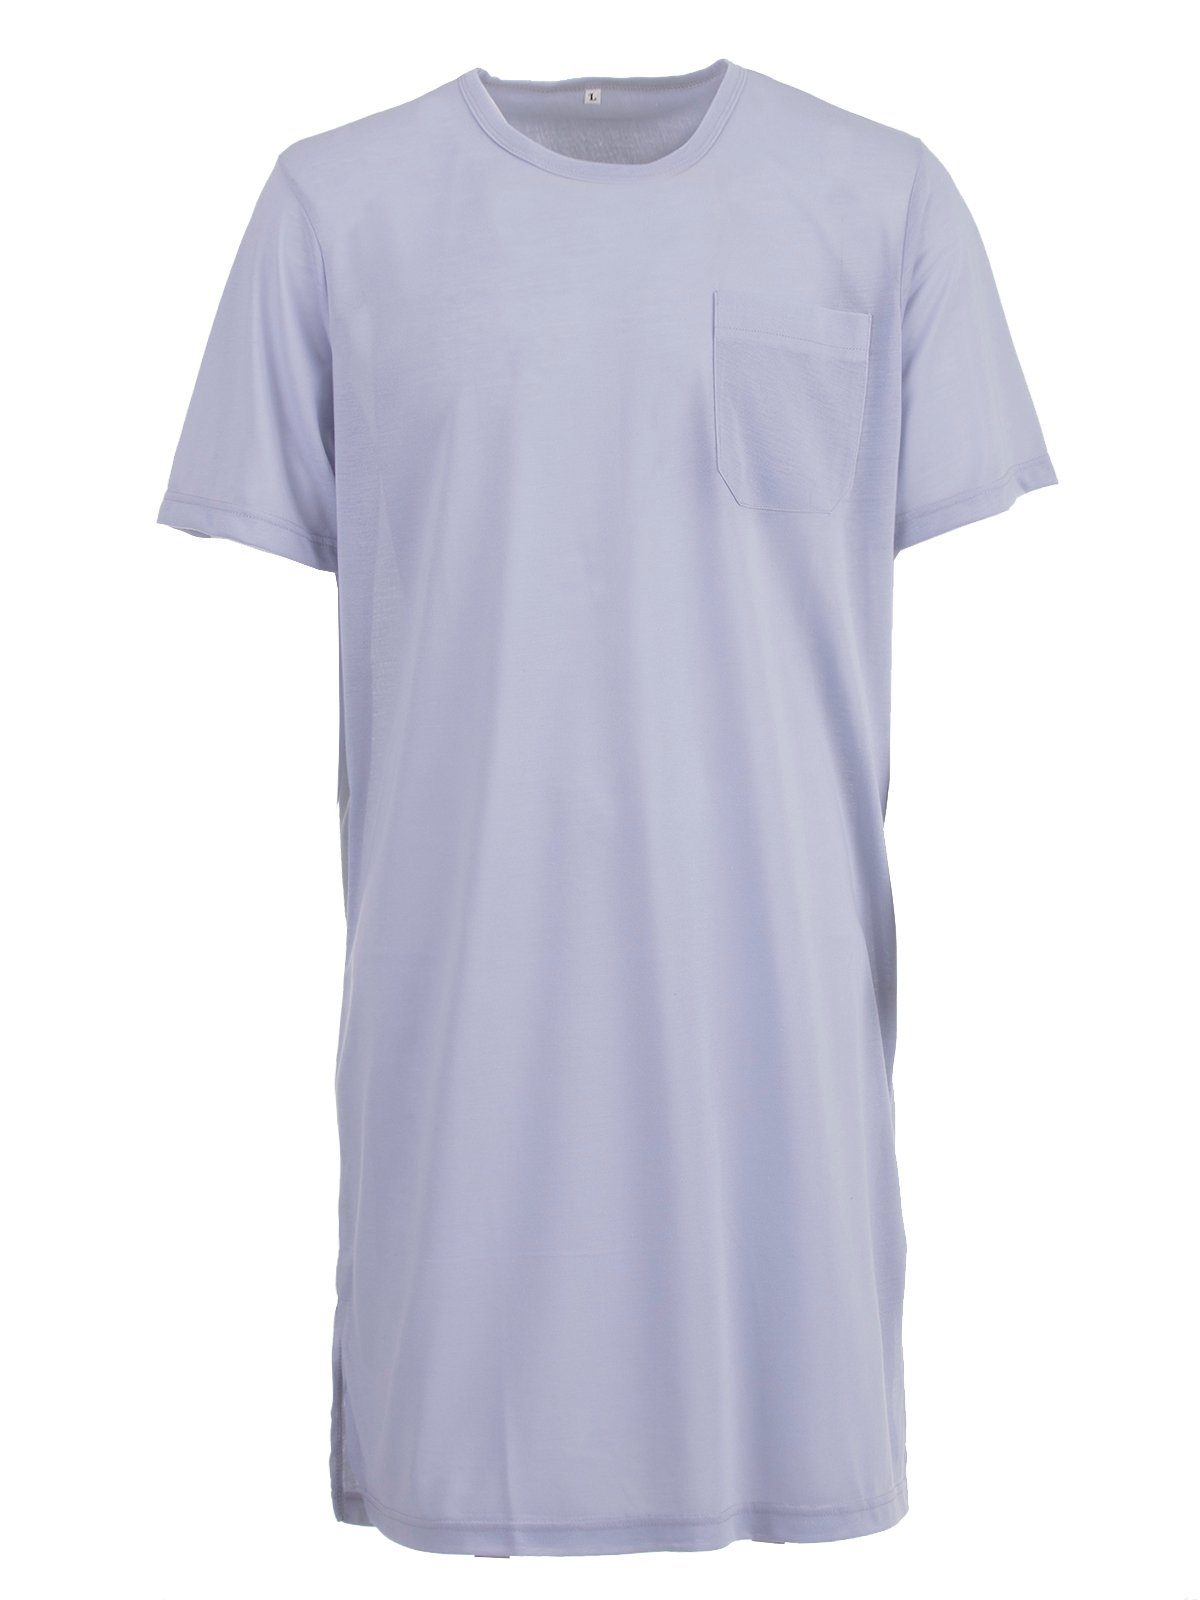 Lucky Nachthemd Nachthemd Kurzarm - Tasche Uni grau